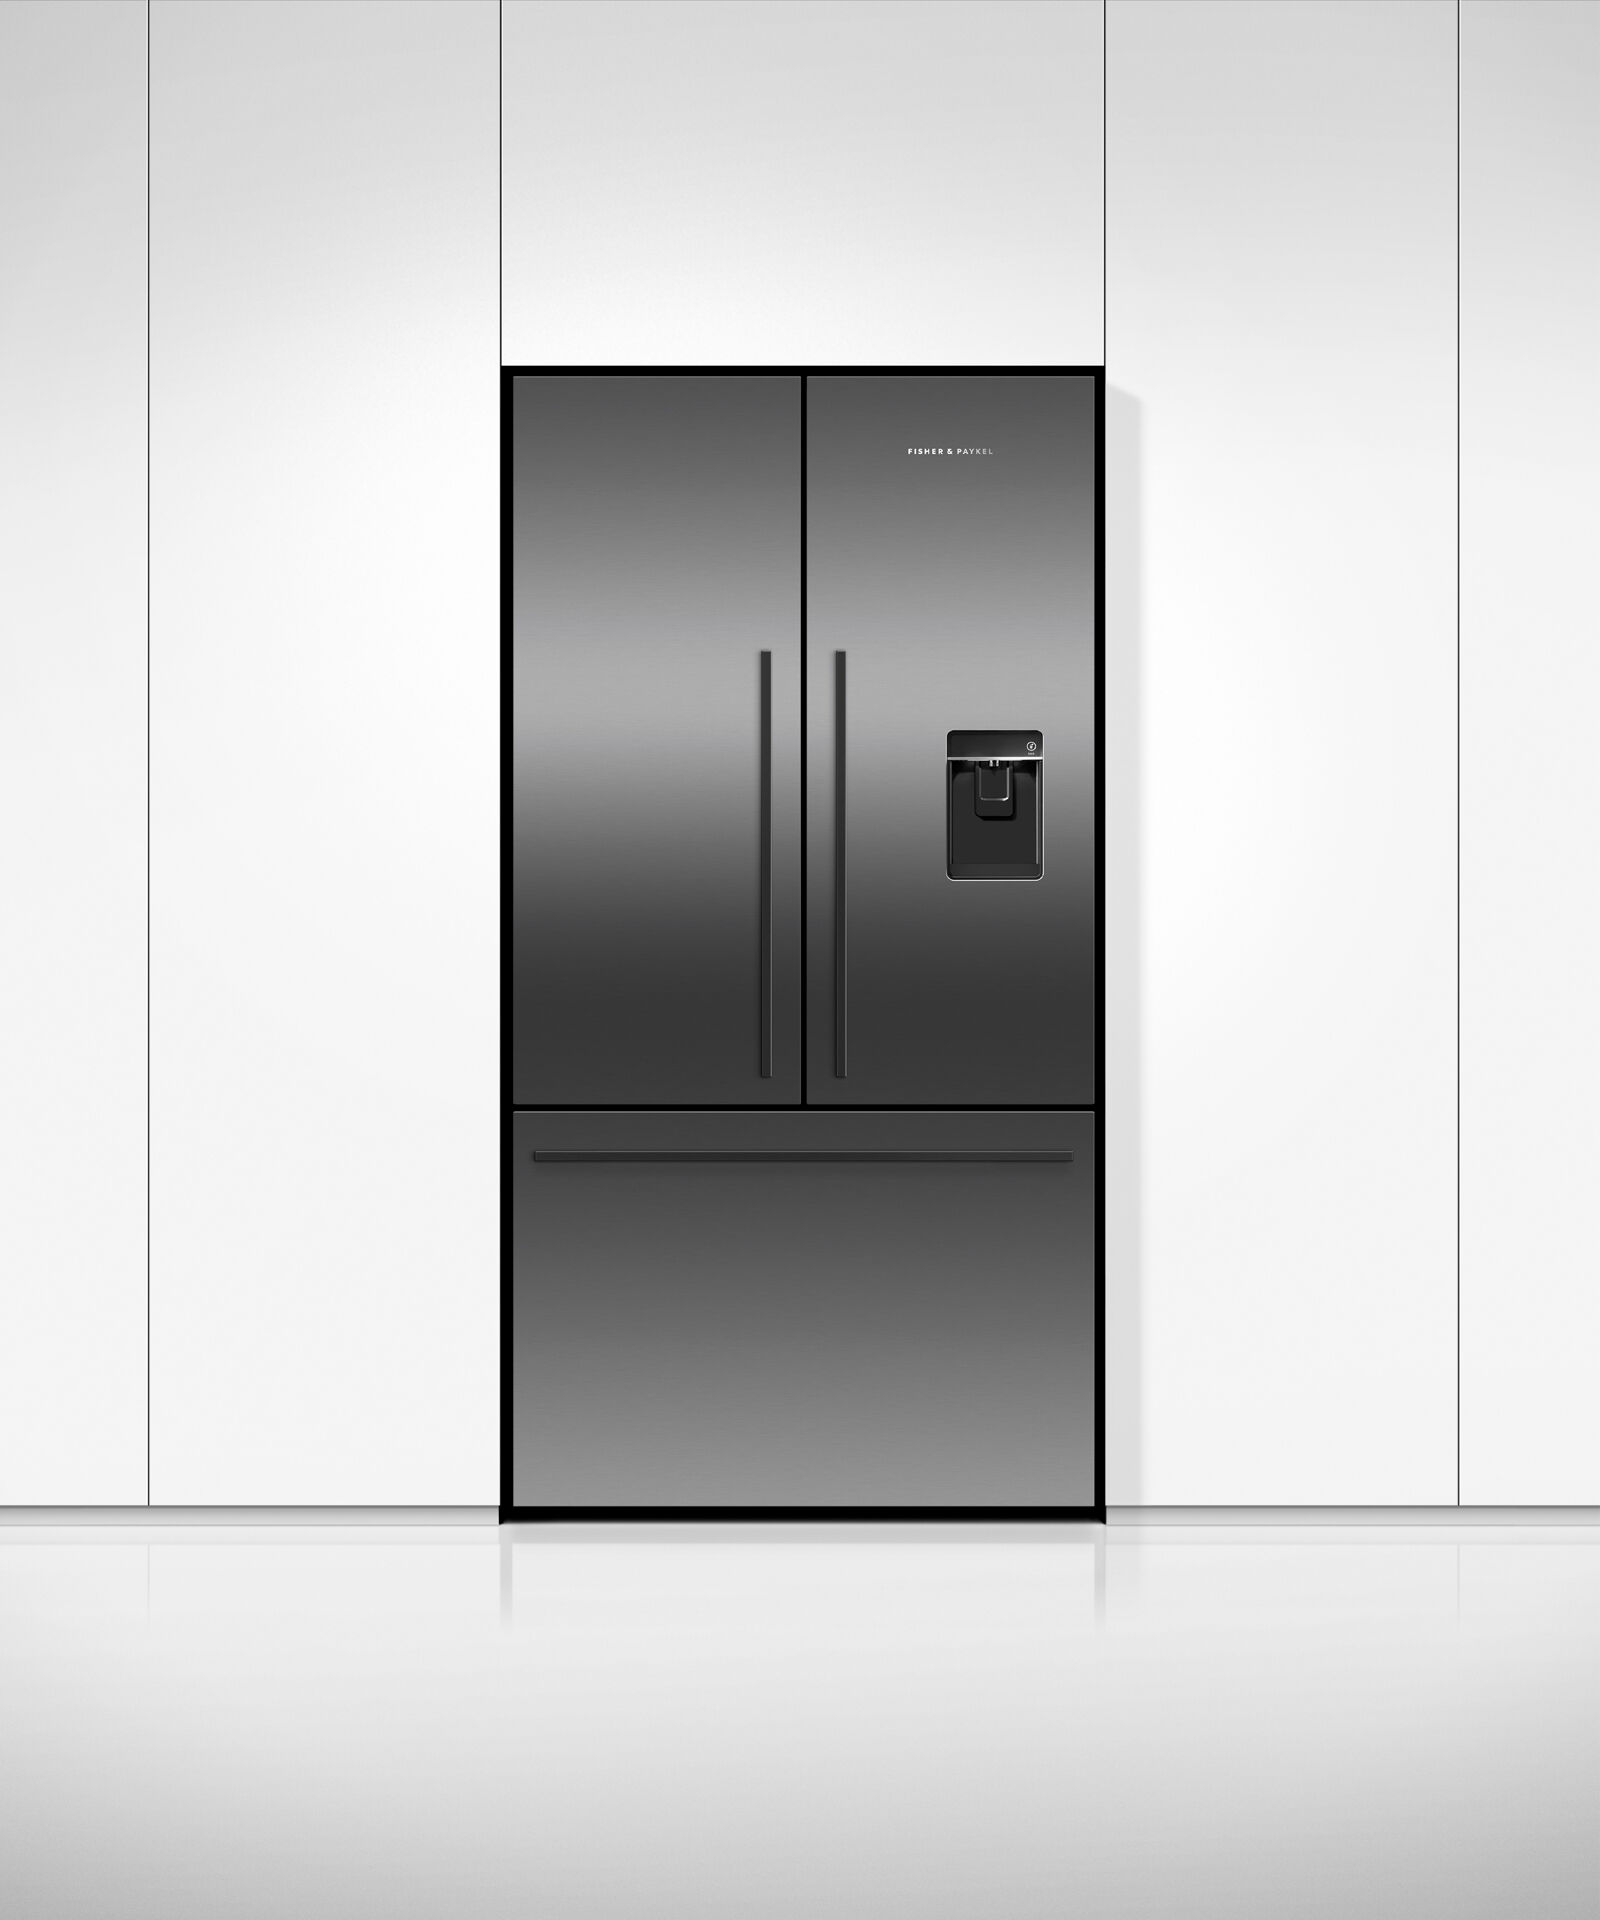 黑色法式對開門雪櫃, 90cm, 自動製冰和冰水, gallery image 3.0